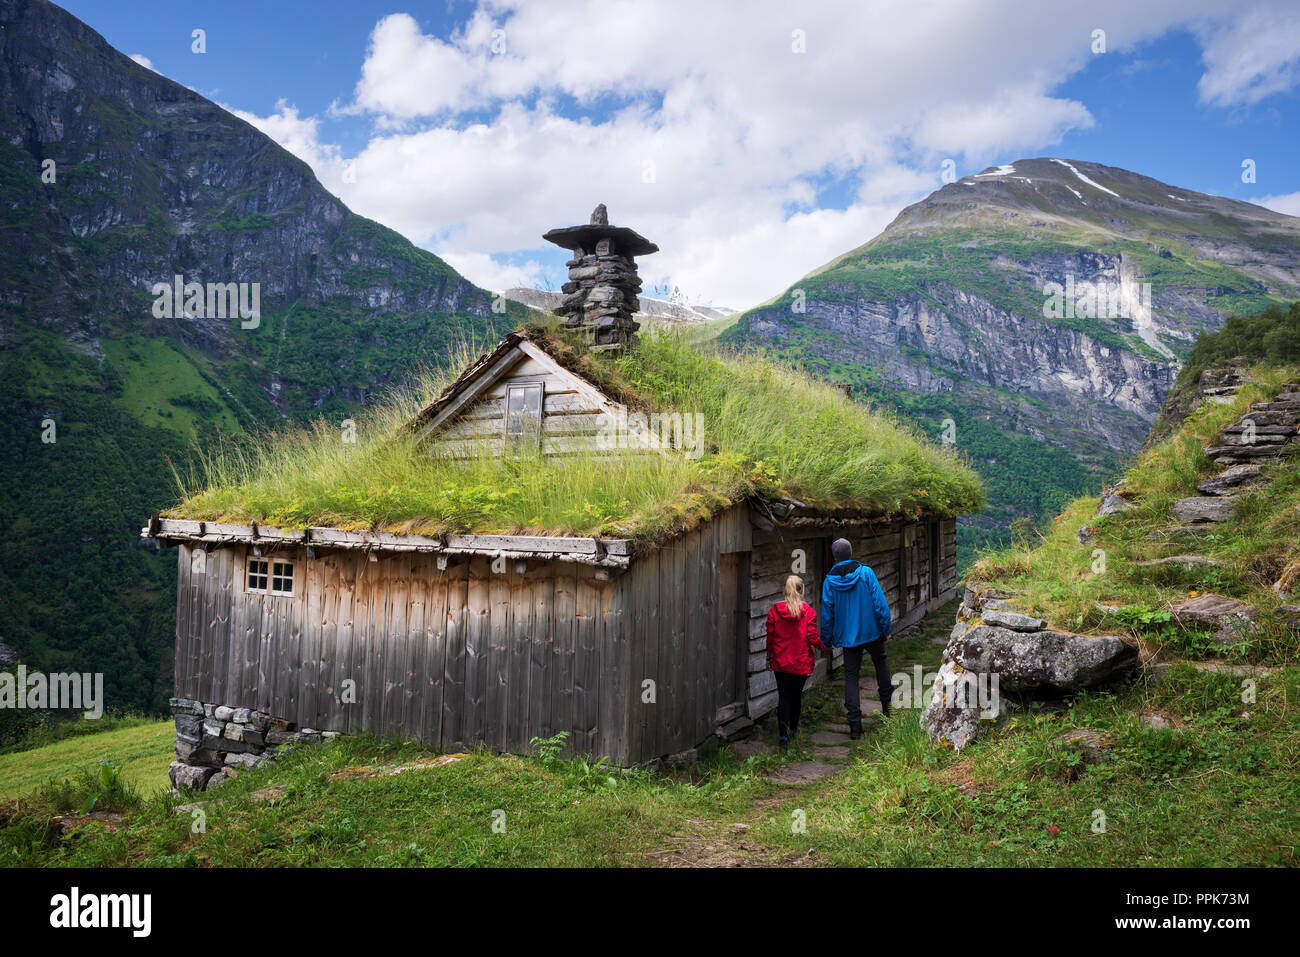 Kagefla - exploitations de montagne avec des maisons le long de la pelouse fjord Geirangerfjorden. Attraction touristique de la Norvège. Une paire de personnes en Sca traditionnels Banque D'Images